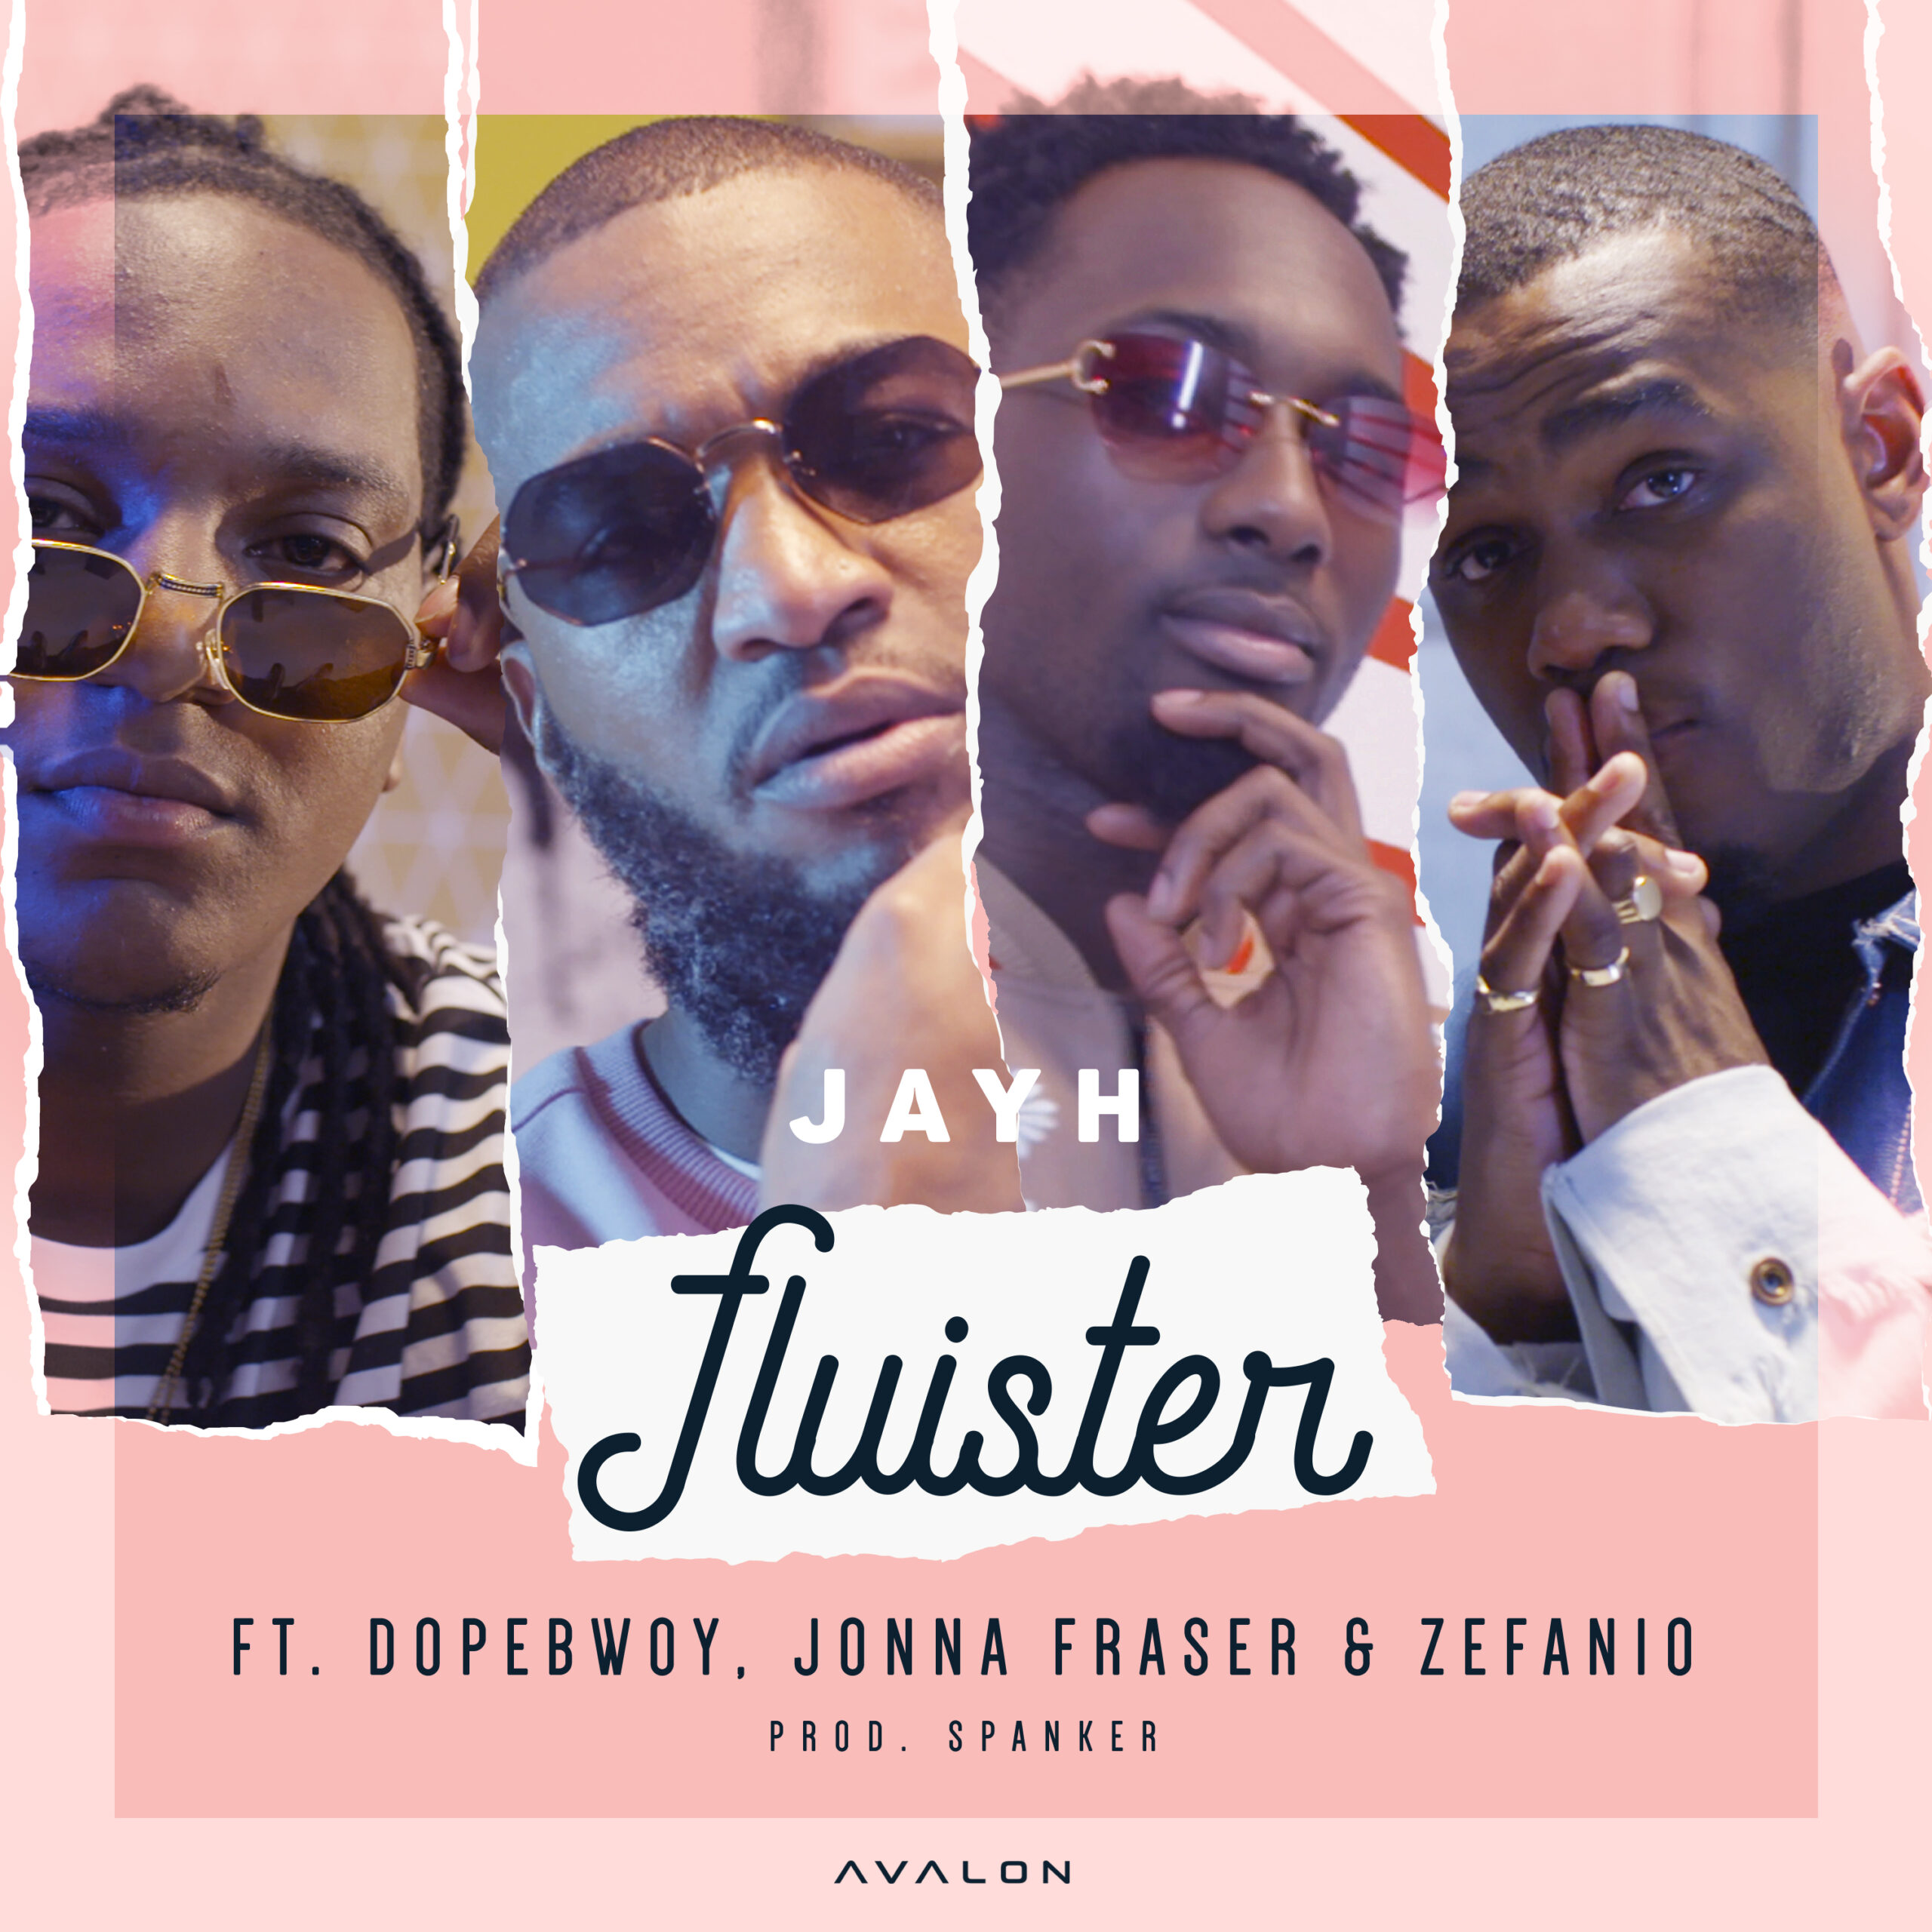 VRIJDAG nieuwe muziek van Jayh! ‘Jayh – Fluister ft. Dopebwoy, Jonna Fraser & Zefanio’